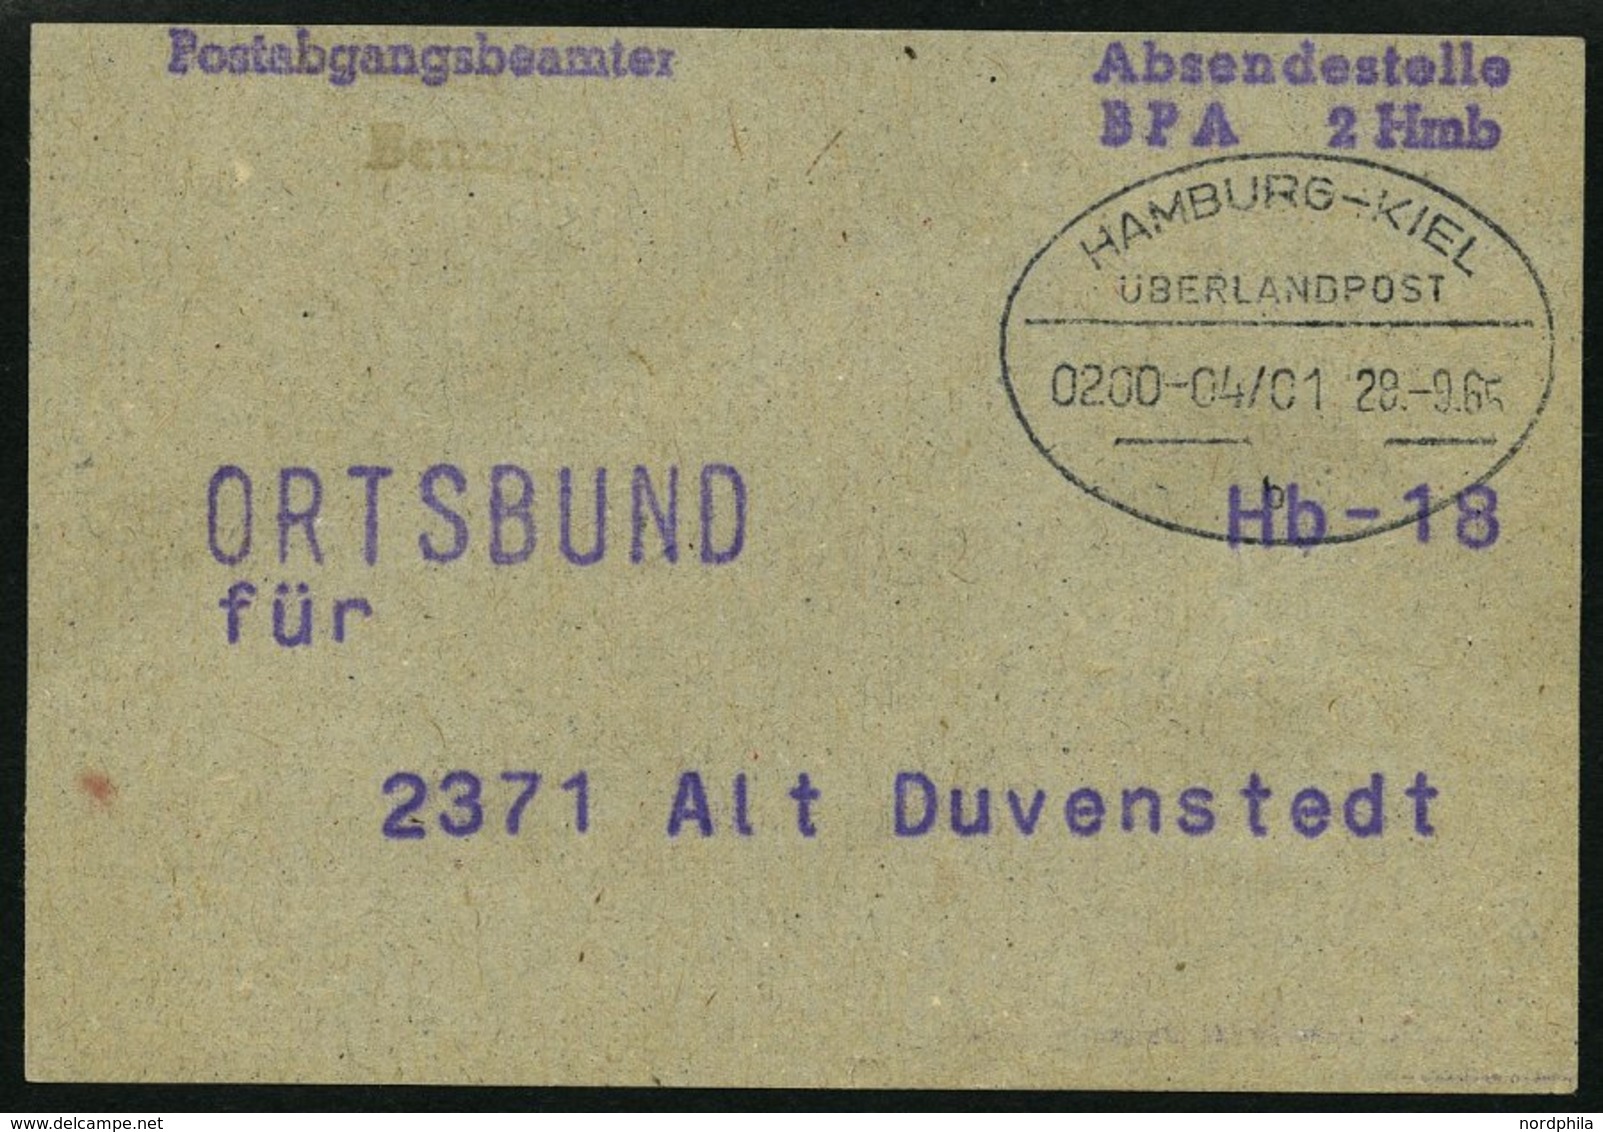 BAHNPOST Hamburg-Kiel, 20 verschiedene Belege, 1892-1964, meist Pracht